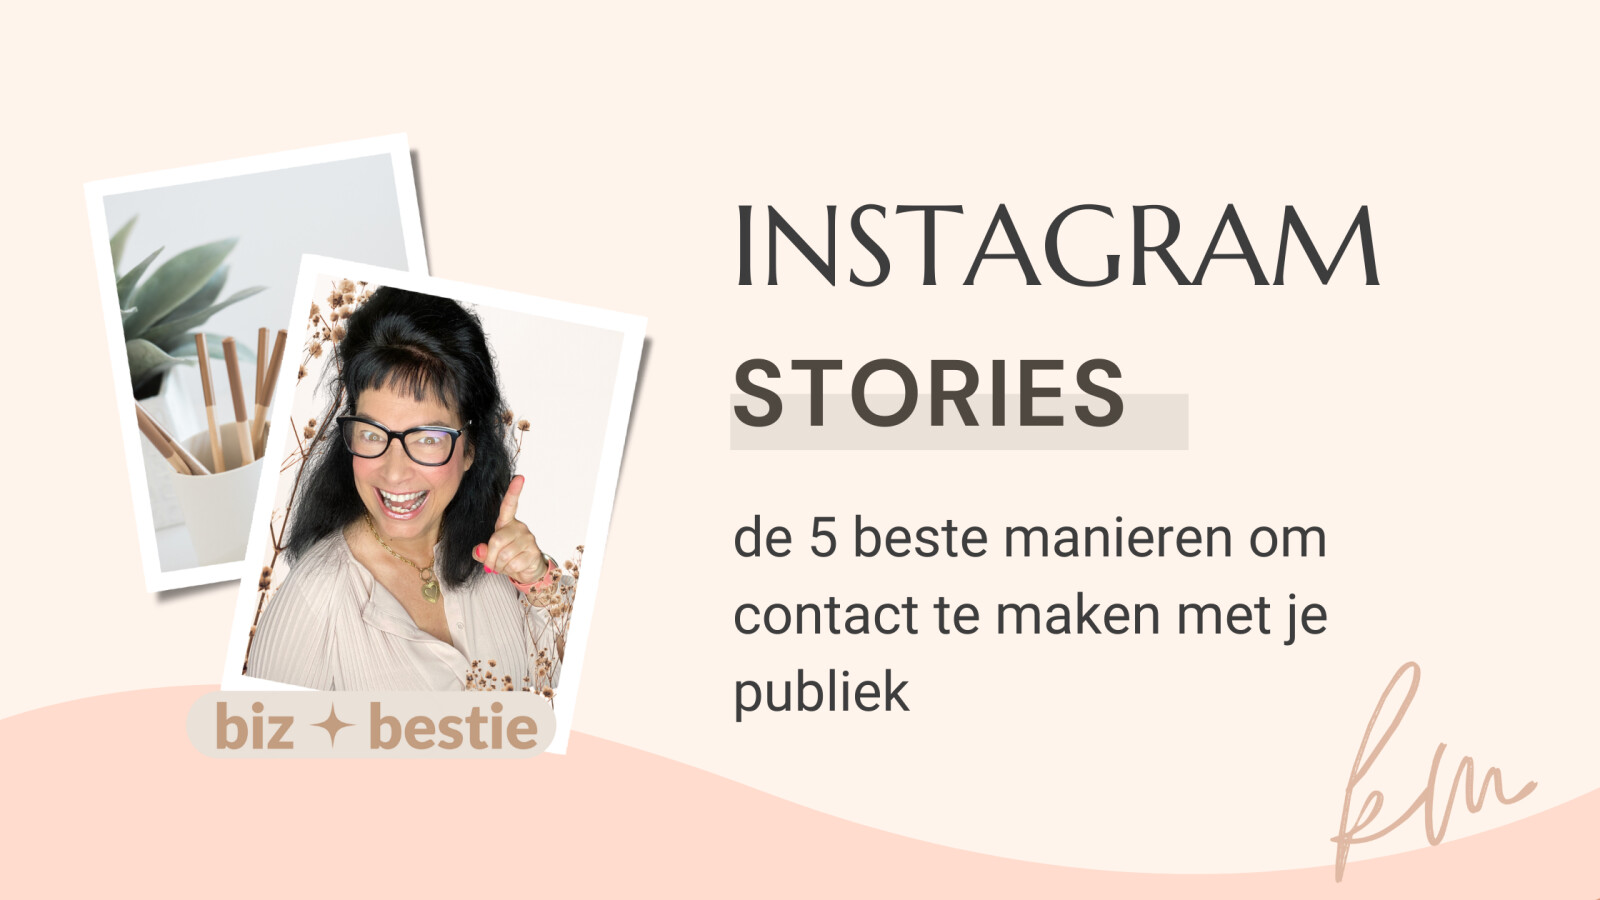 De beste 5 manieren om contact te maken met je publiek met behulp van Instagram Stories